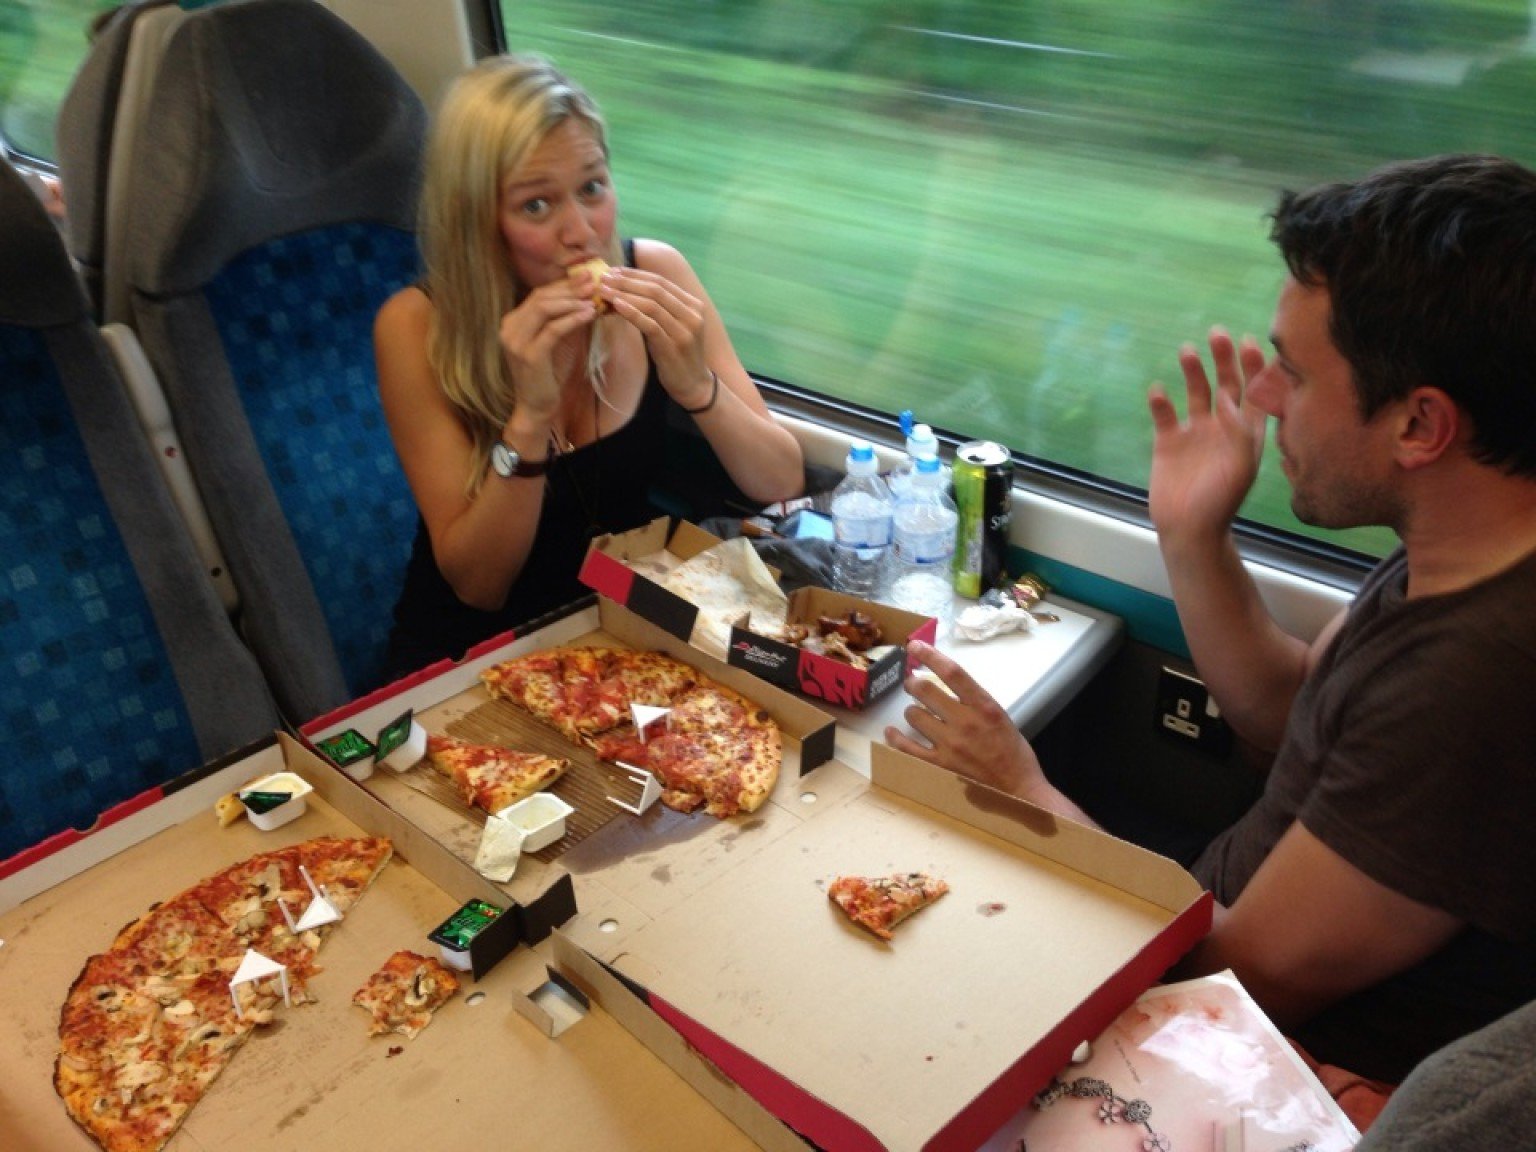 Развлечения в поезде. Еда в вагоне. Питание в поезде. Столик с едой в поезде. Еда в поезде ресторане.